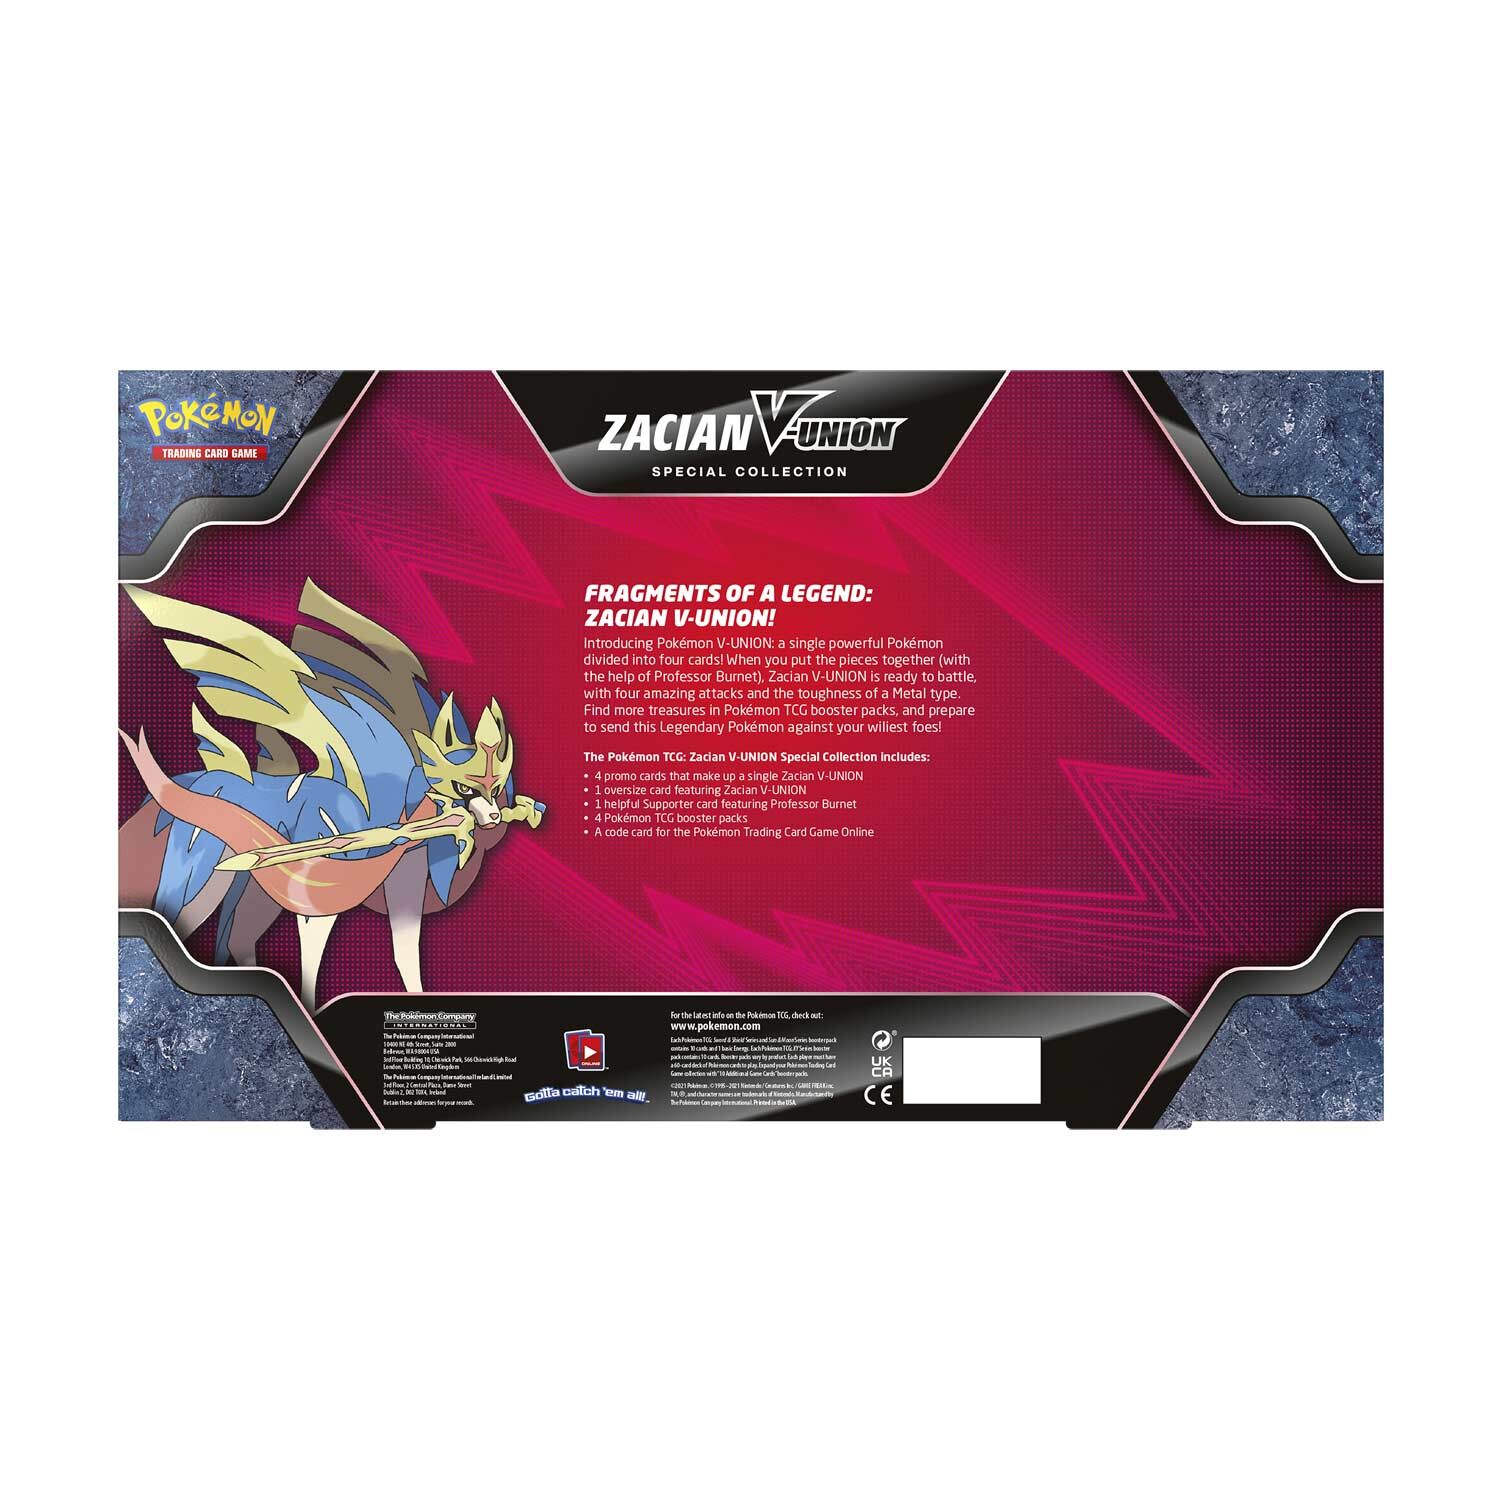 Pokémon Zacian V-Union Special Collection Box - EN